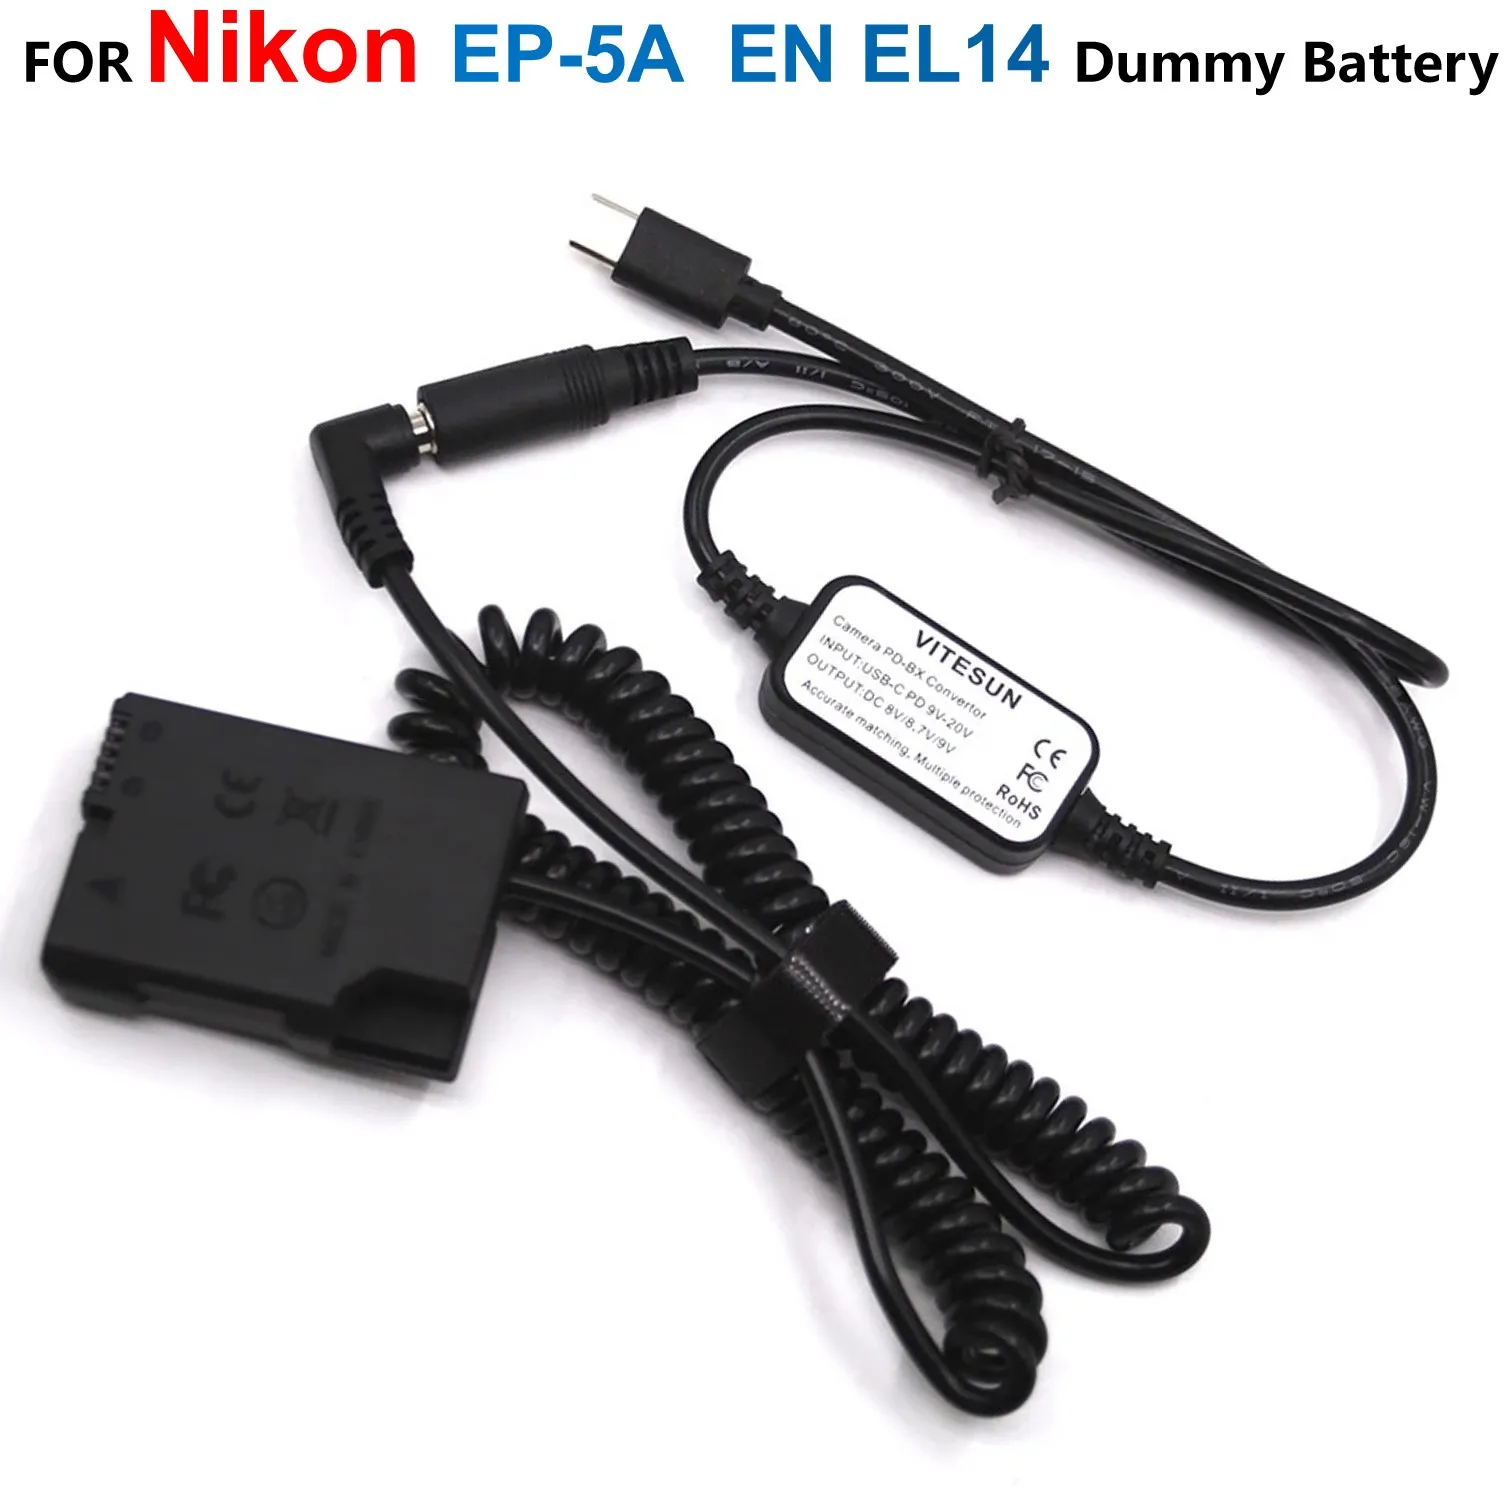 

EP-5A EN EL14 DC Couple Dummy Battery+EH-5A PD Charger USB Power Cable For Nikon D3200 D3300 D3400 D3500 D5200 D5300 D5500 D5600